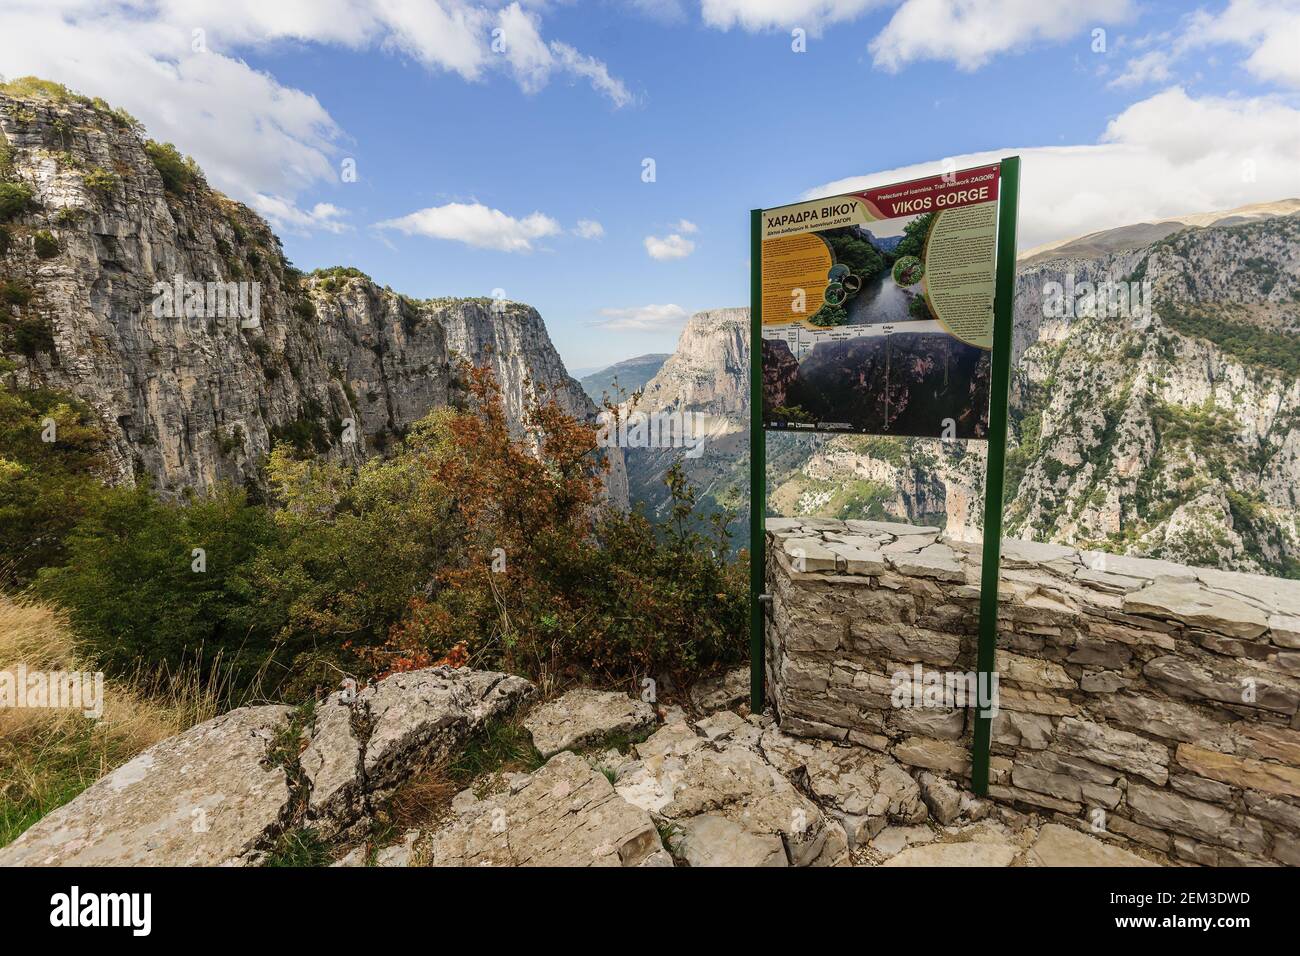 Monodentry, Grecia - 11 ottobre 2011: Vista della gola Vikos, con il cartello esplicativo, a Zagoria, Grecia Foto Stock